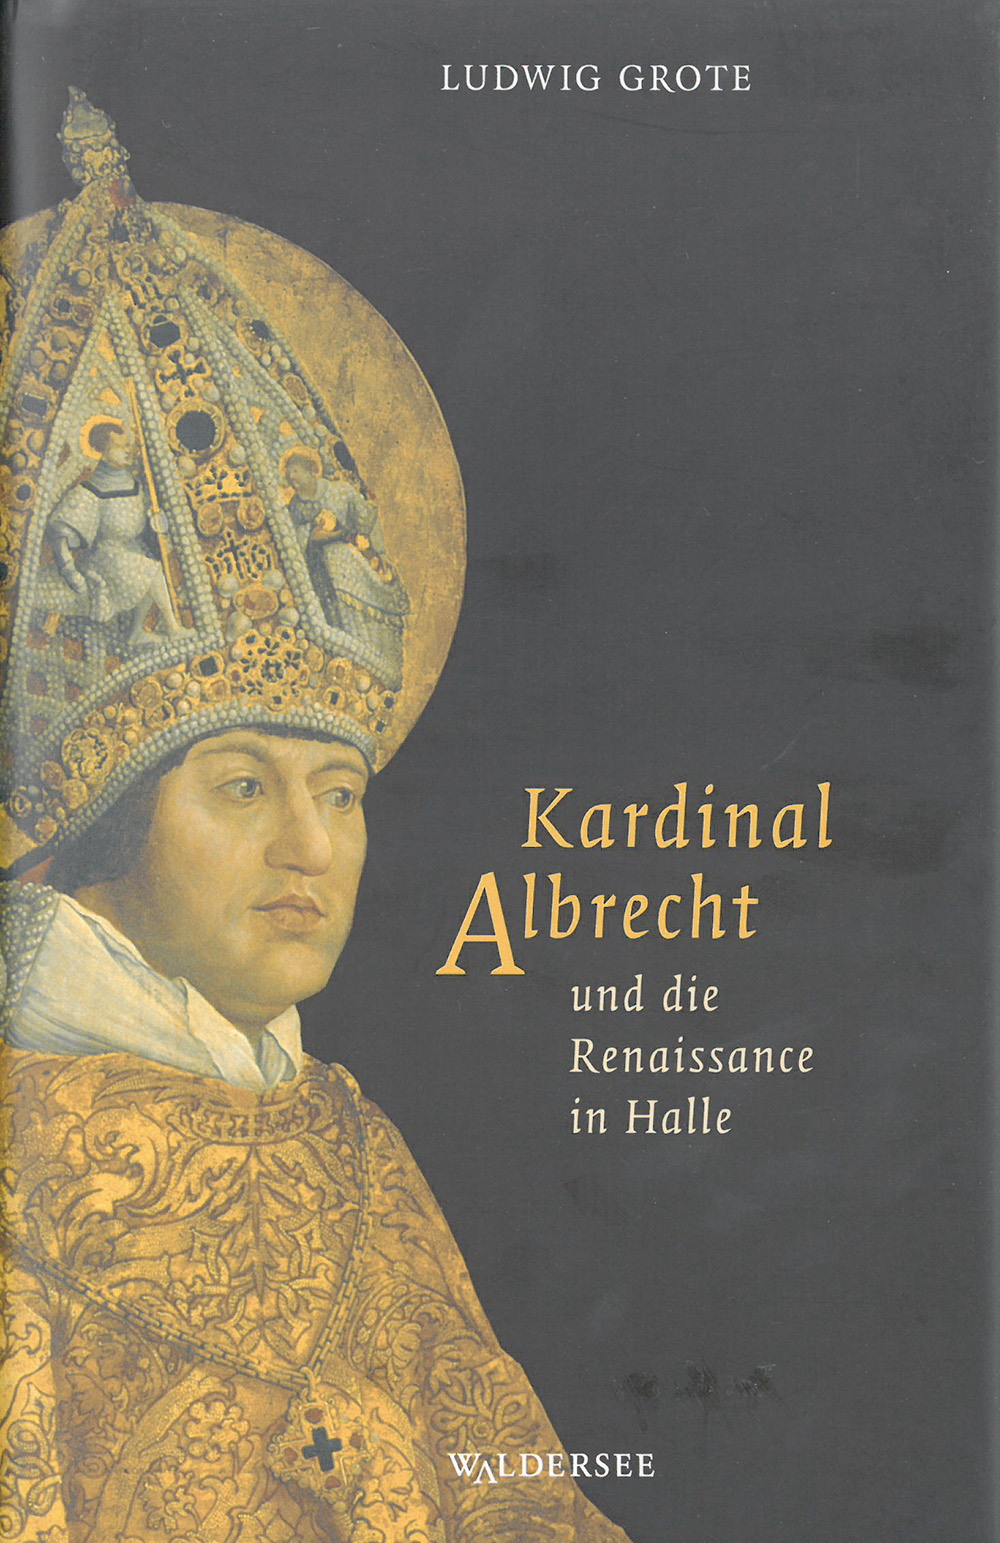 Kardinal Albrecht und die Renaissance in Halle. - Von Ludwig Grote. Halle 2006.